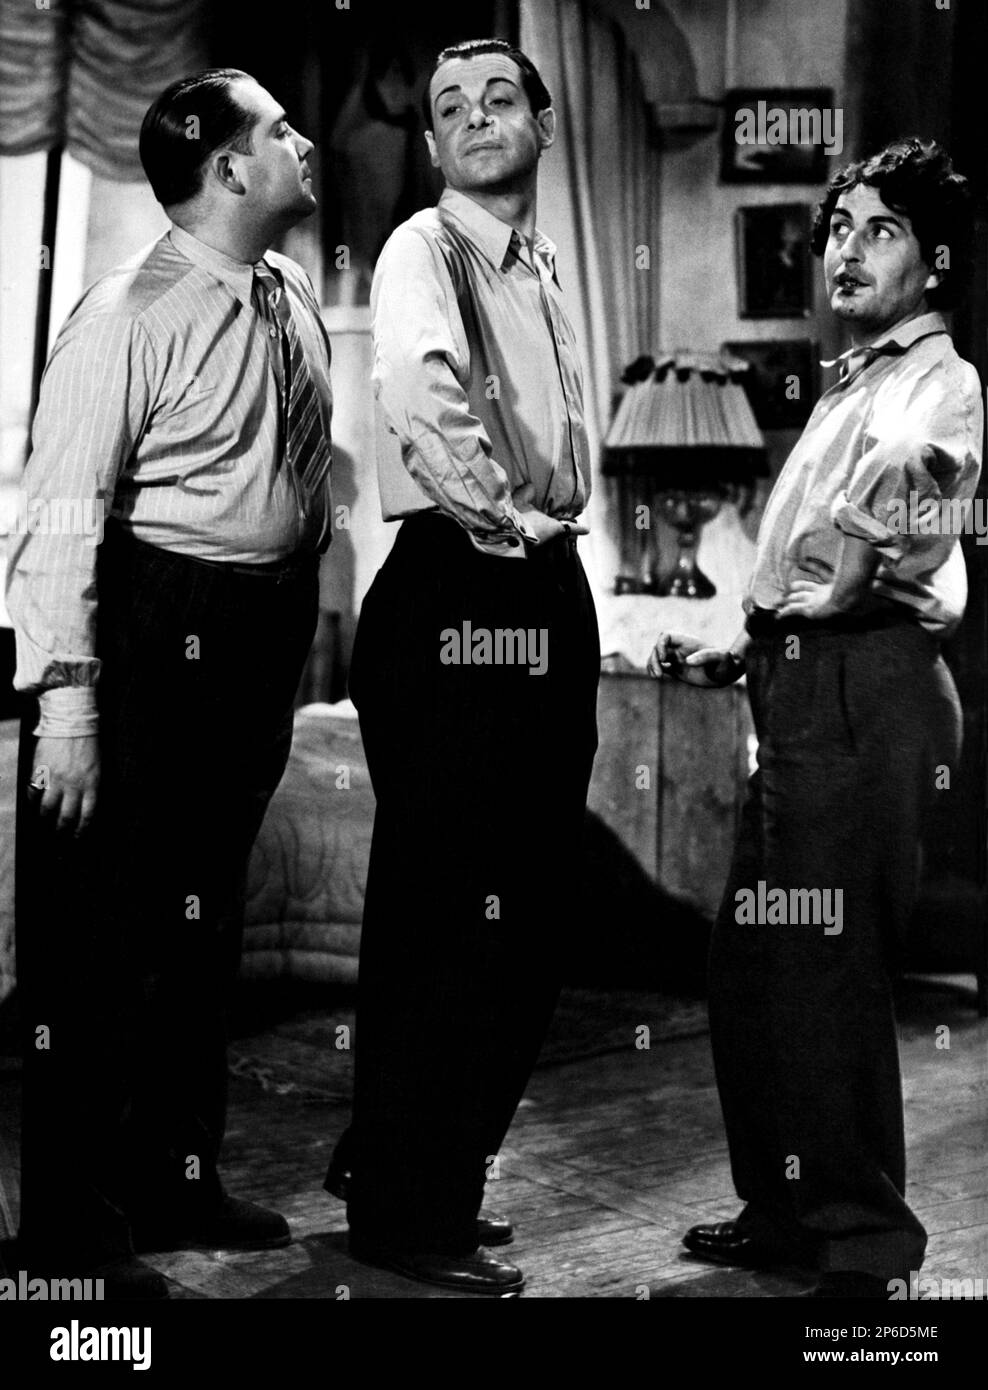 1935 , FRANCIA : il FILM FRANCESE FANFARE D'AMOUR ( su con la vita ) di Richard Pottier , da una storia di Robert Thoeren , con Fernand Gravey e Julien Garette . Questo film è stato il modello per il film 1959 di Billy Wilder ALCUNI COME HIT HOT ( Un qualcuno piace caldo ) con Jack Lemmon , Tony Curtis e Marilyn Monroe . - FILM - CINEMA - GAY - ritratto - ritratto - coppia - coppia - omosessuale - omosessualità - omosessuale - omosessualità - LGBT --- Archivio GBB Foto Stock